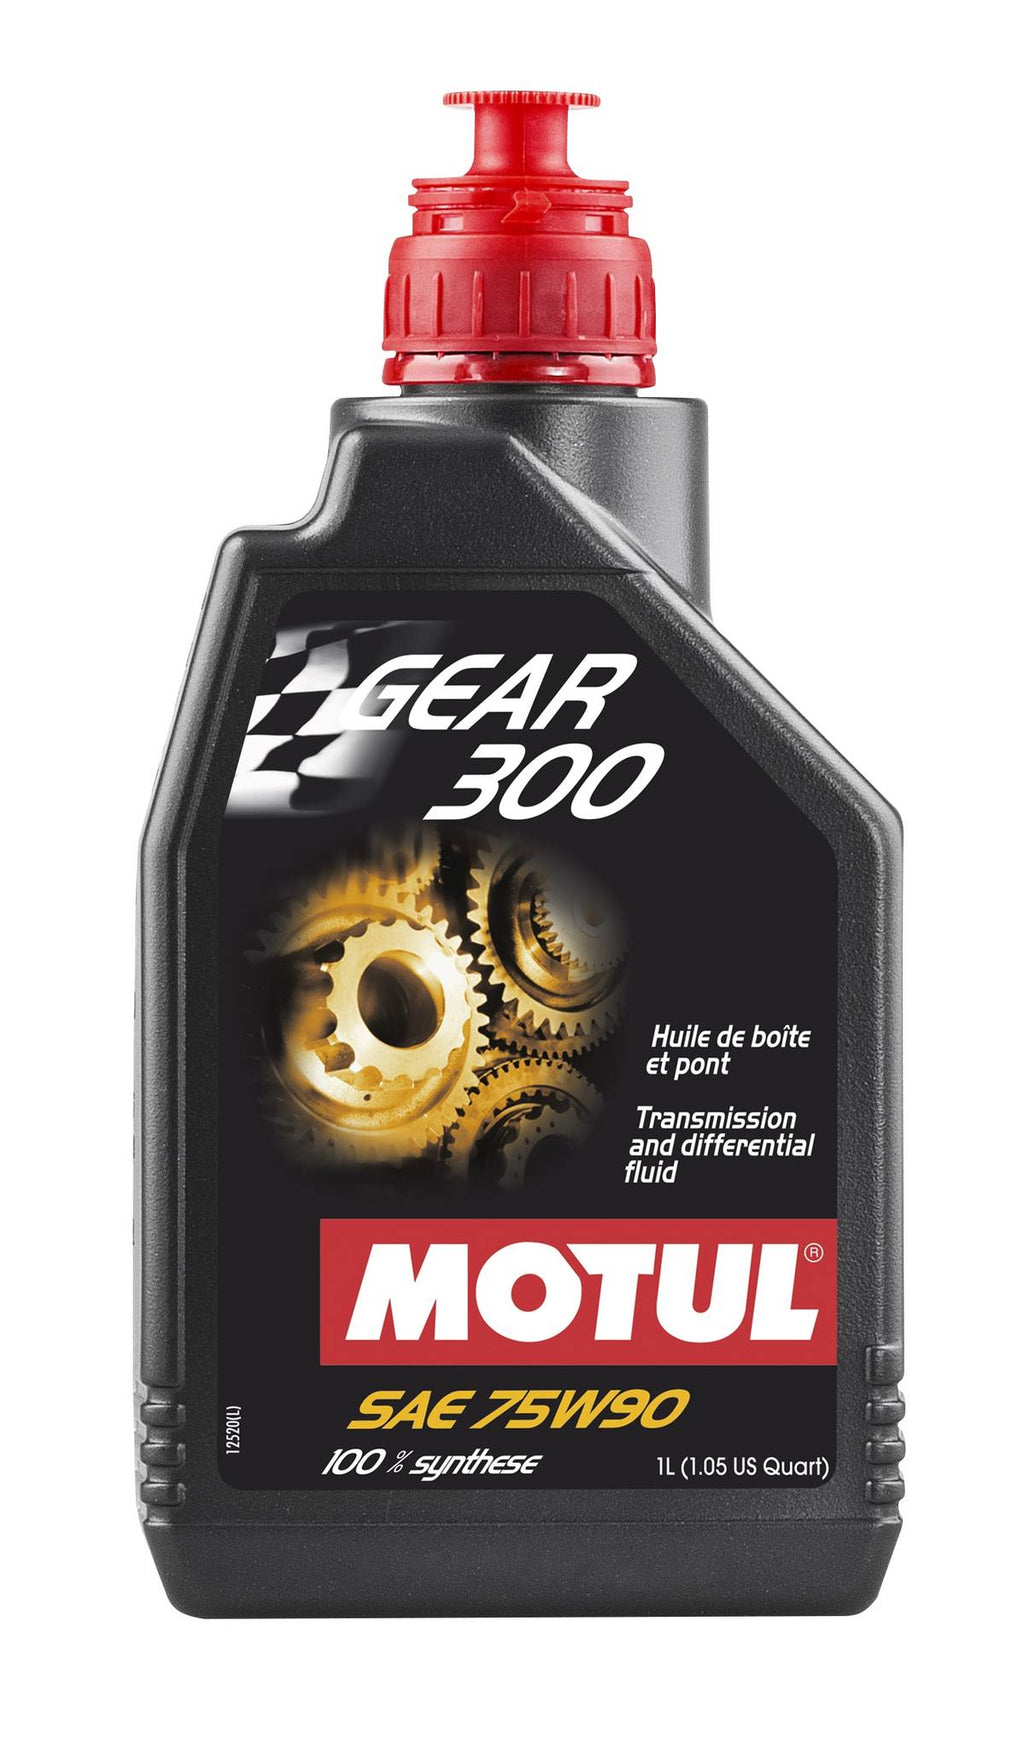 Motul - GEAR 300 Synthetic Gear Oil - 75W90